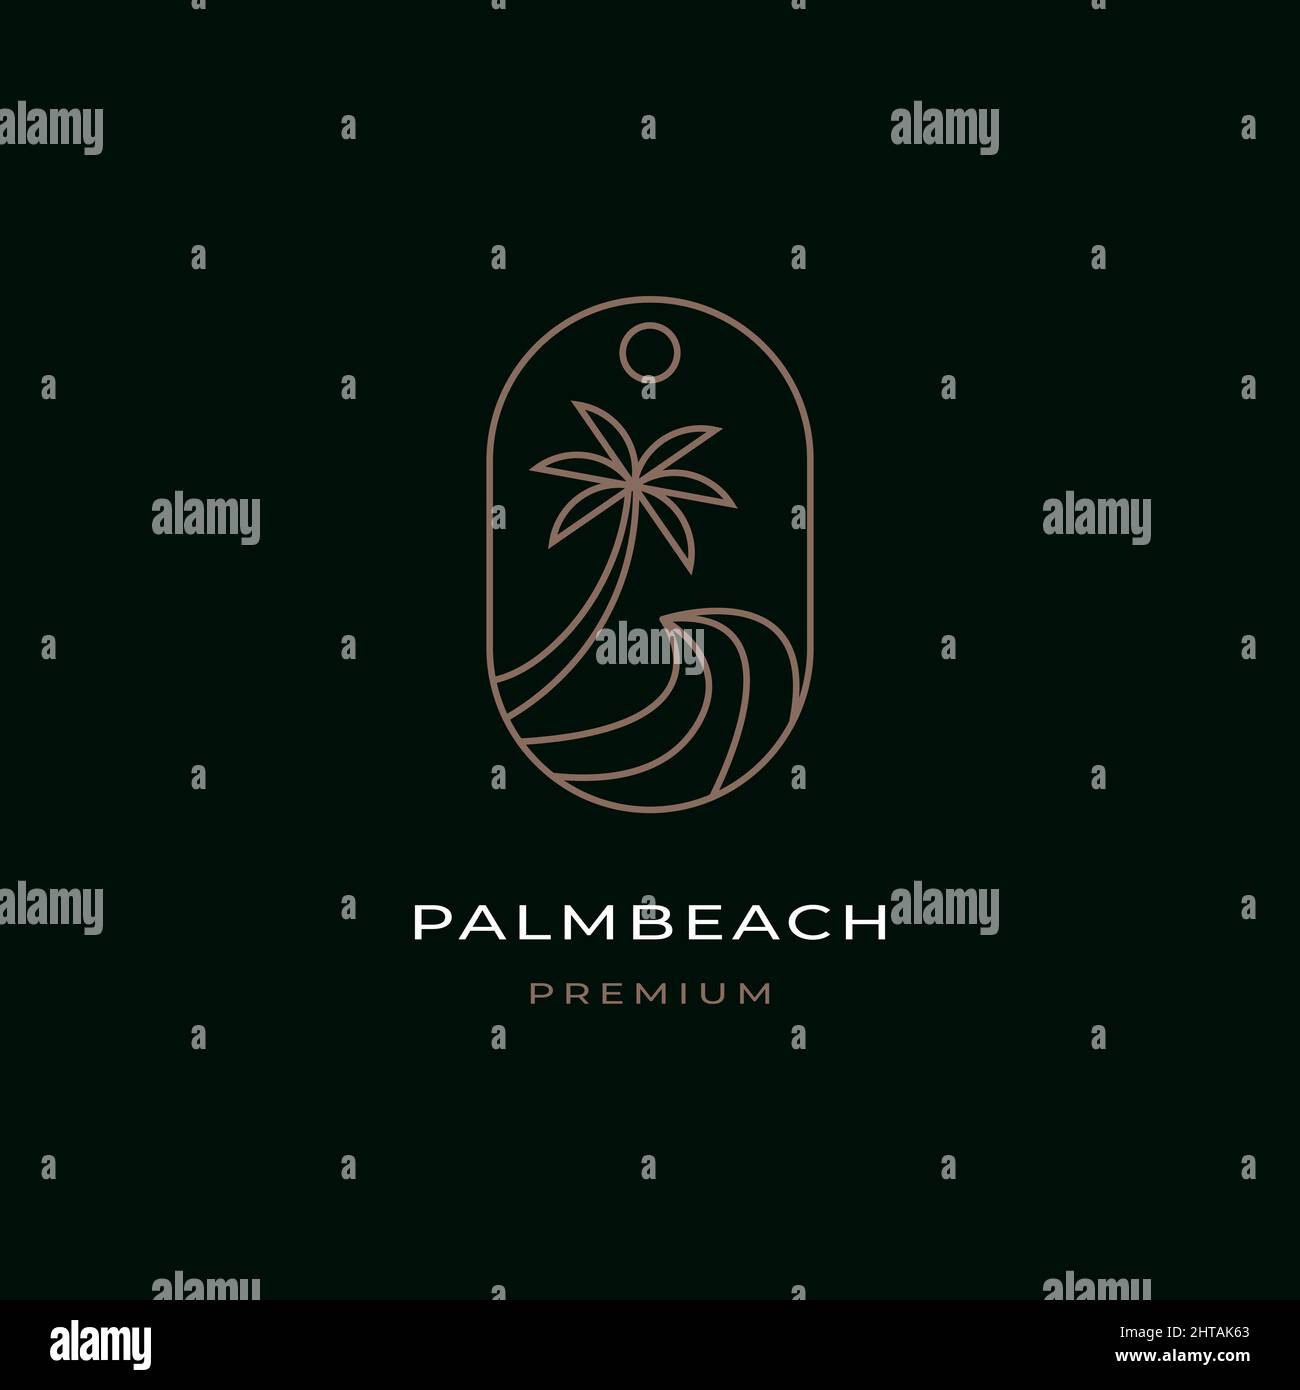 Palm Beach Logo Design Inspiration Vektor Vorlage. Welle mit Palmendarstellung Stock Vektor